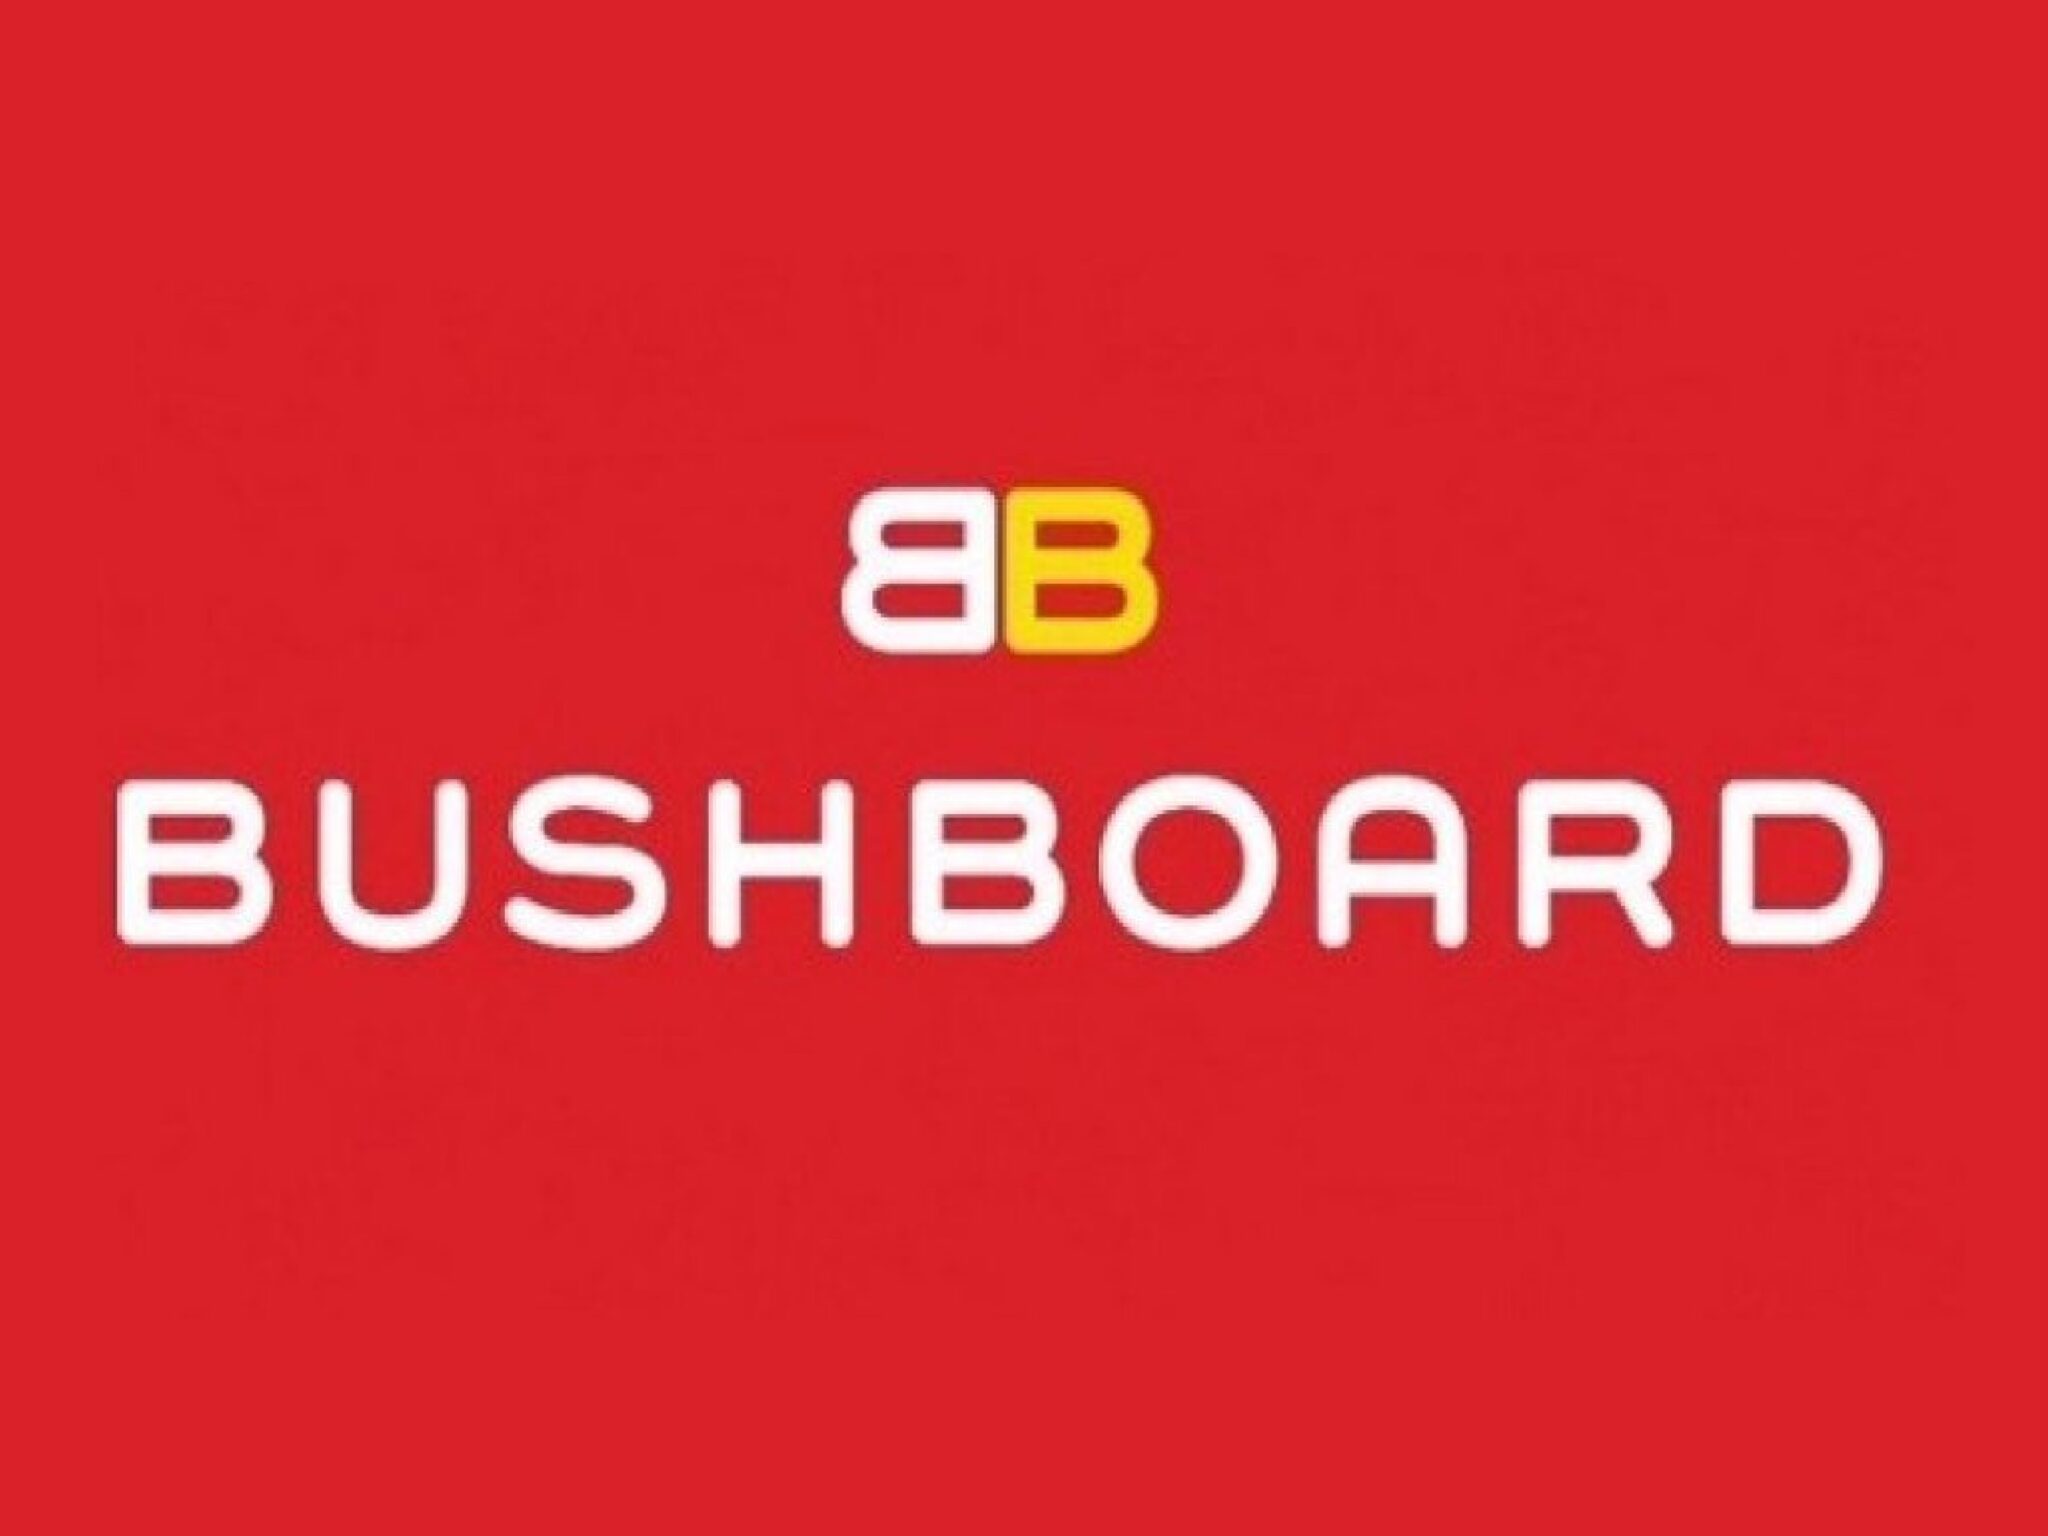 Bushboard